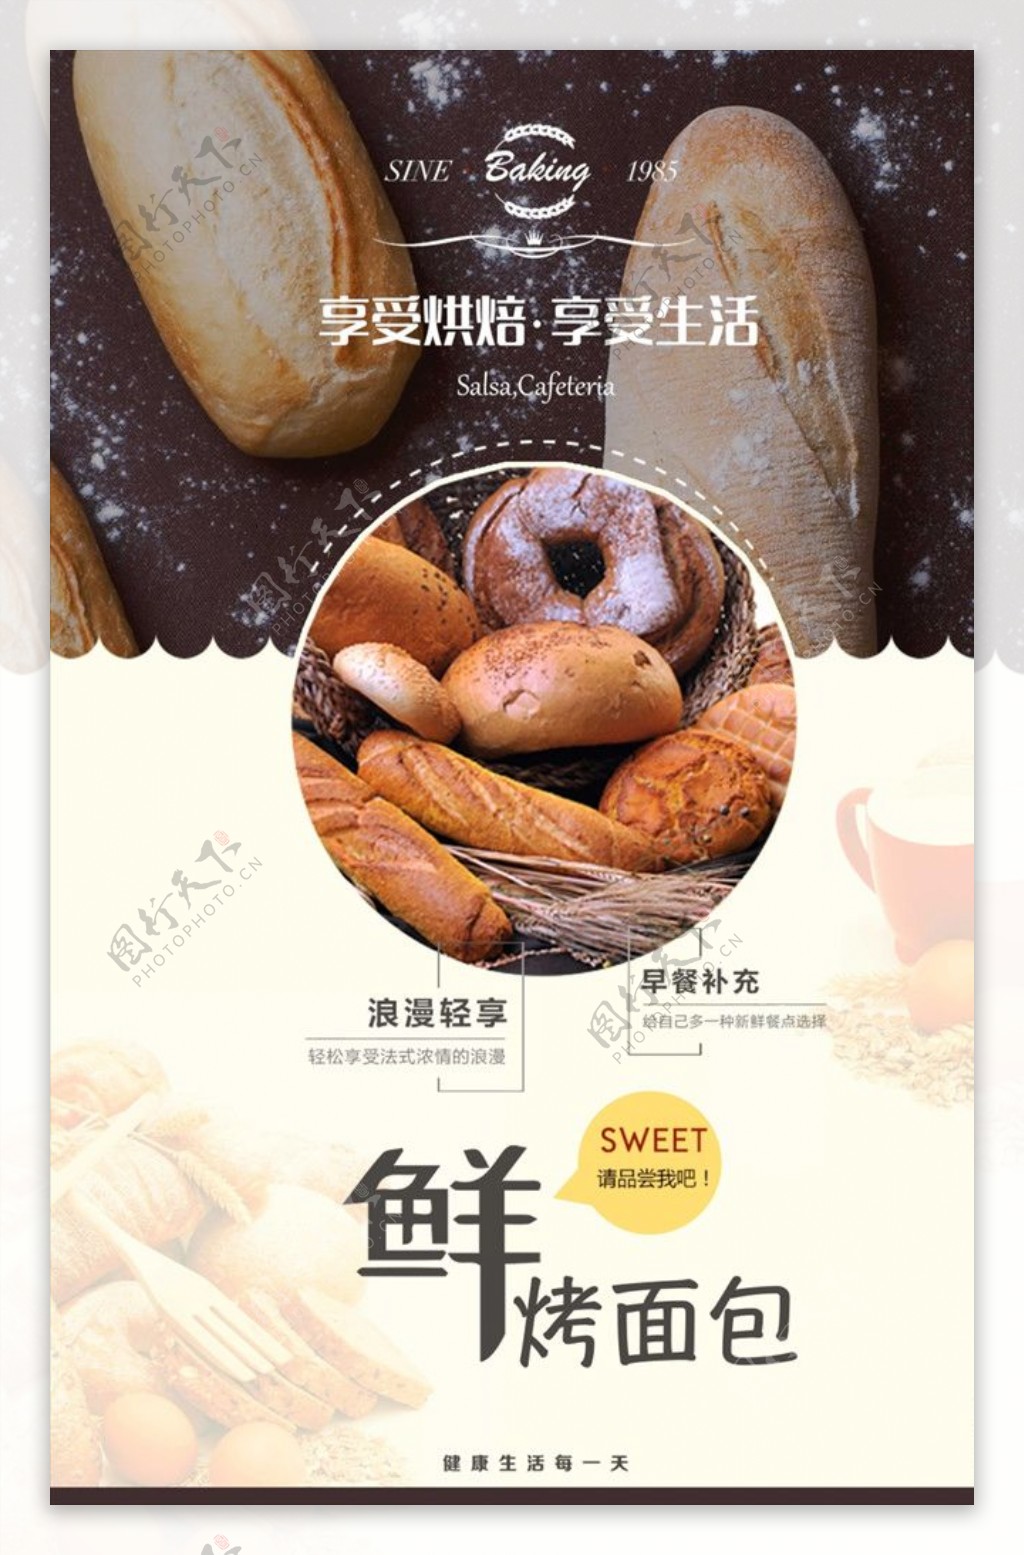 欧美烘焙面包美食海报